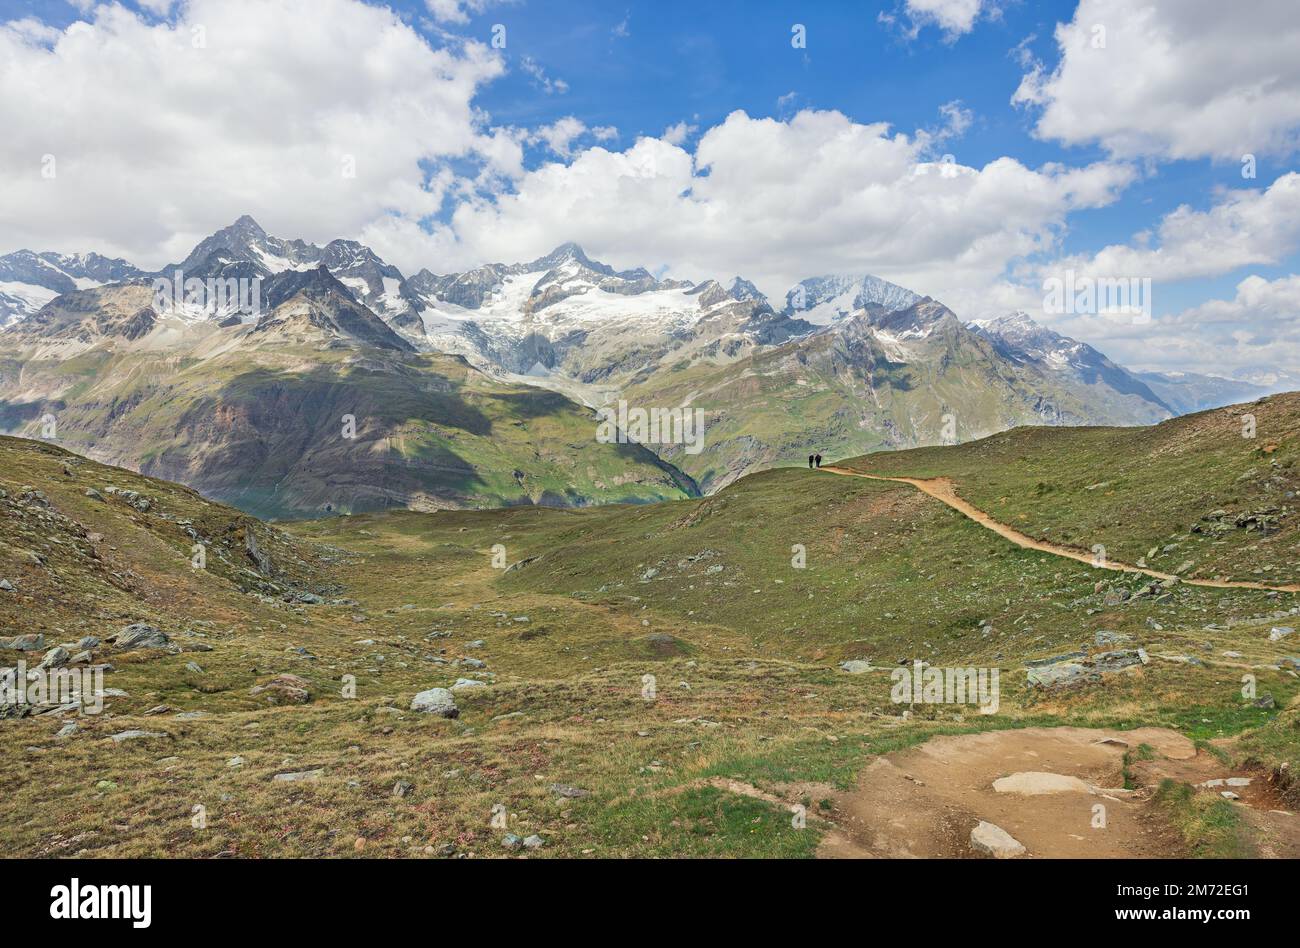 Railway station in Gornergrat, Switzerland. Matterhorn mountain visible in background Stock Photo